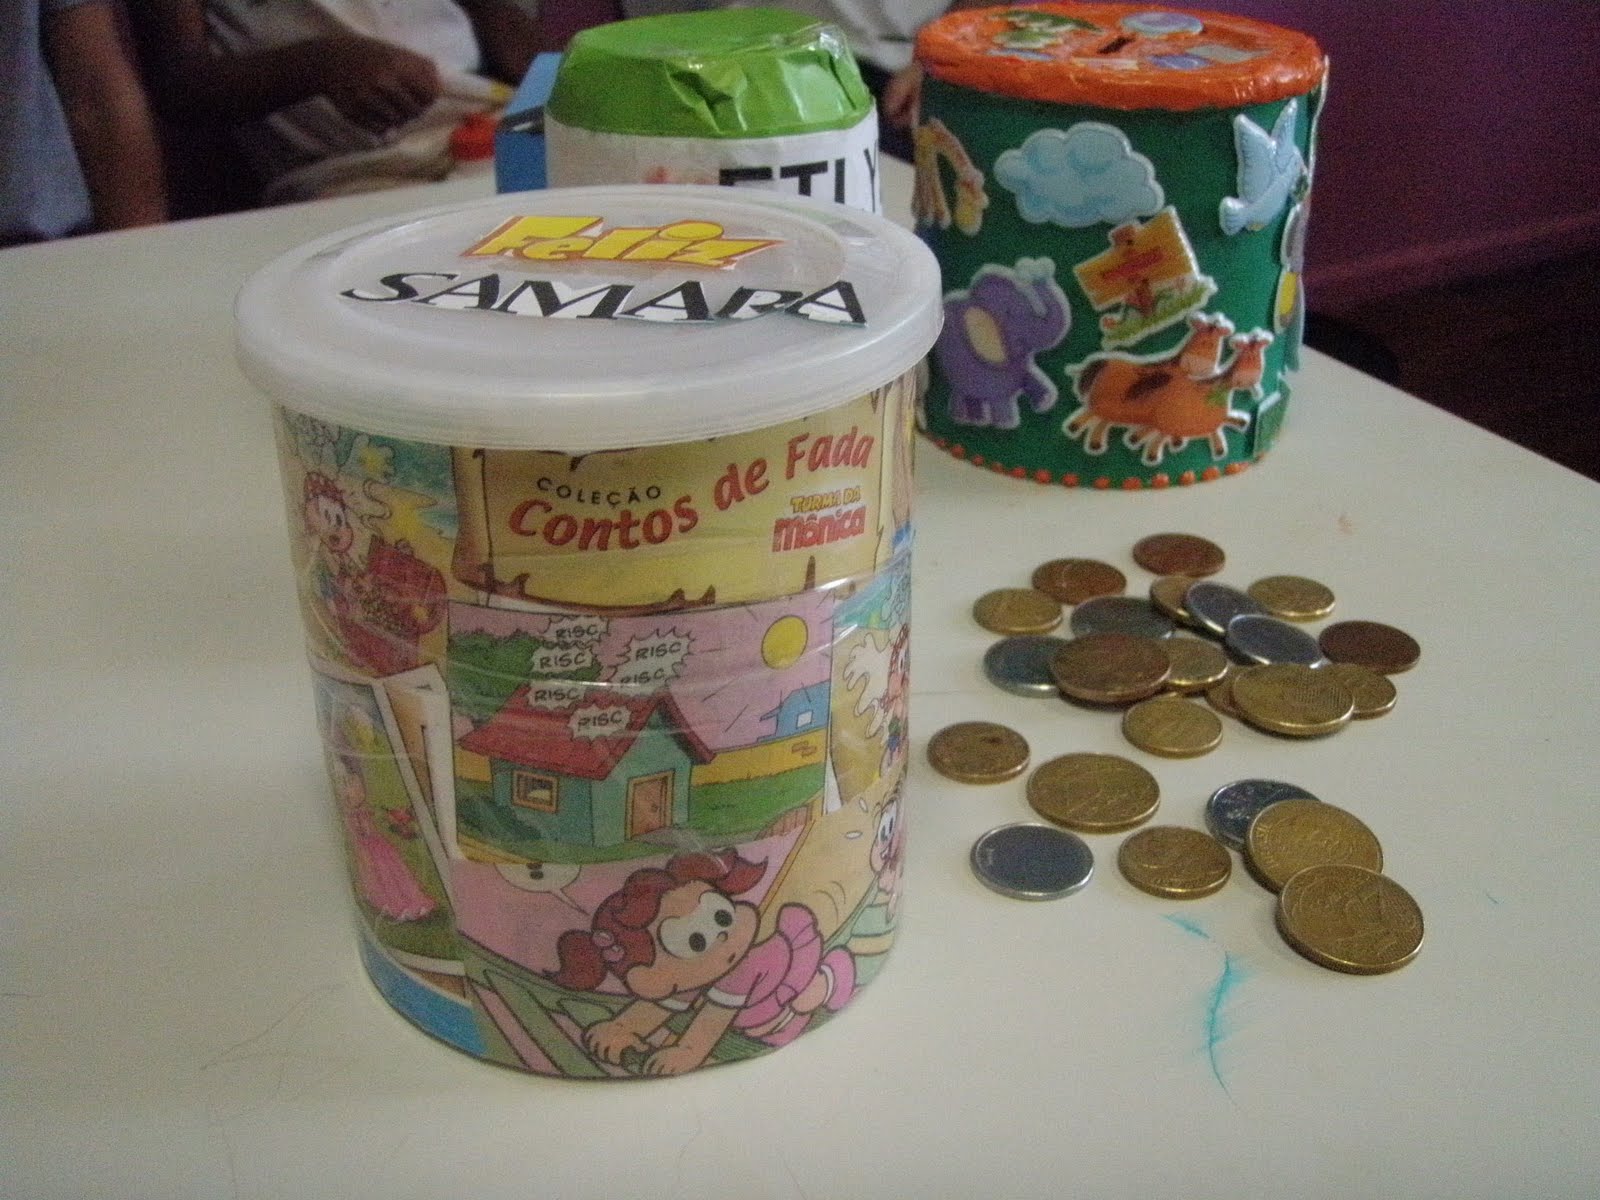 Educação financeira para crianças: atividades lúdicas ajudam a motivar a participação dos pequenos